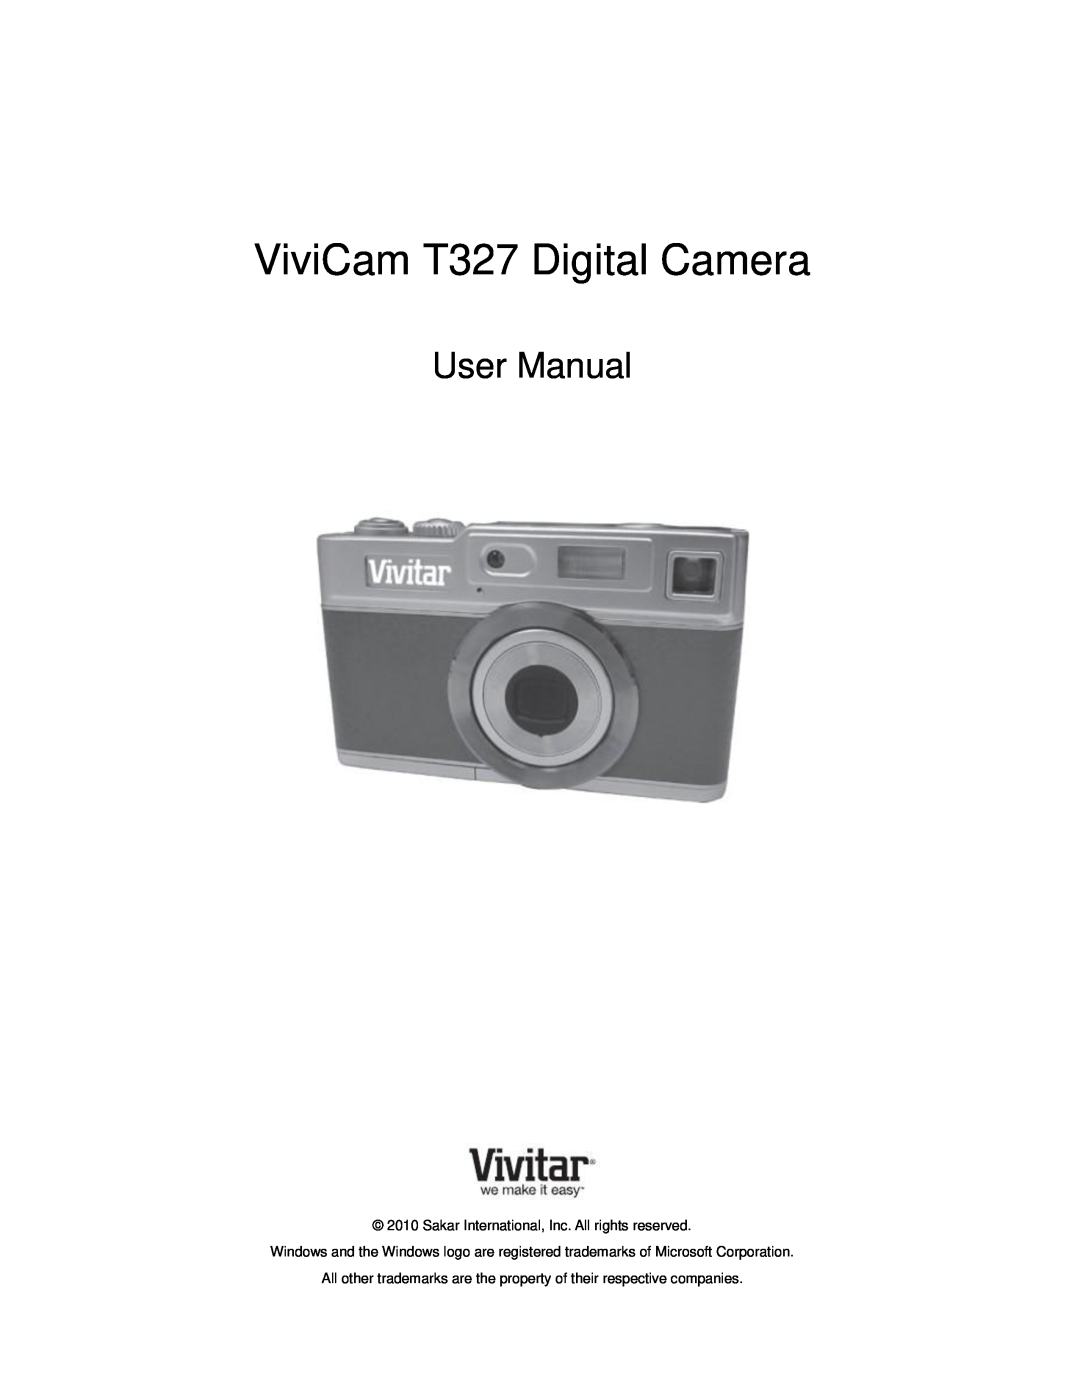 Vivitar user manual ViviCam T327 Digital Camera, User Manual, Sakar International, Inc. All rights reserved 